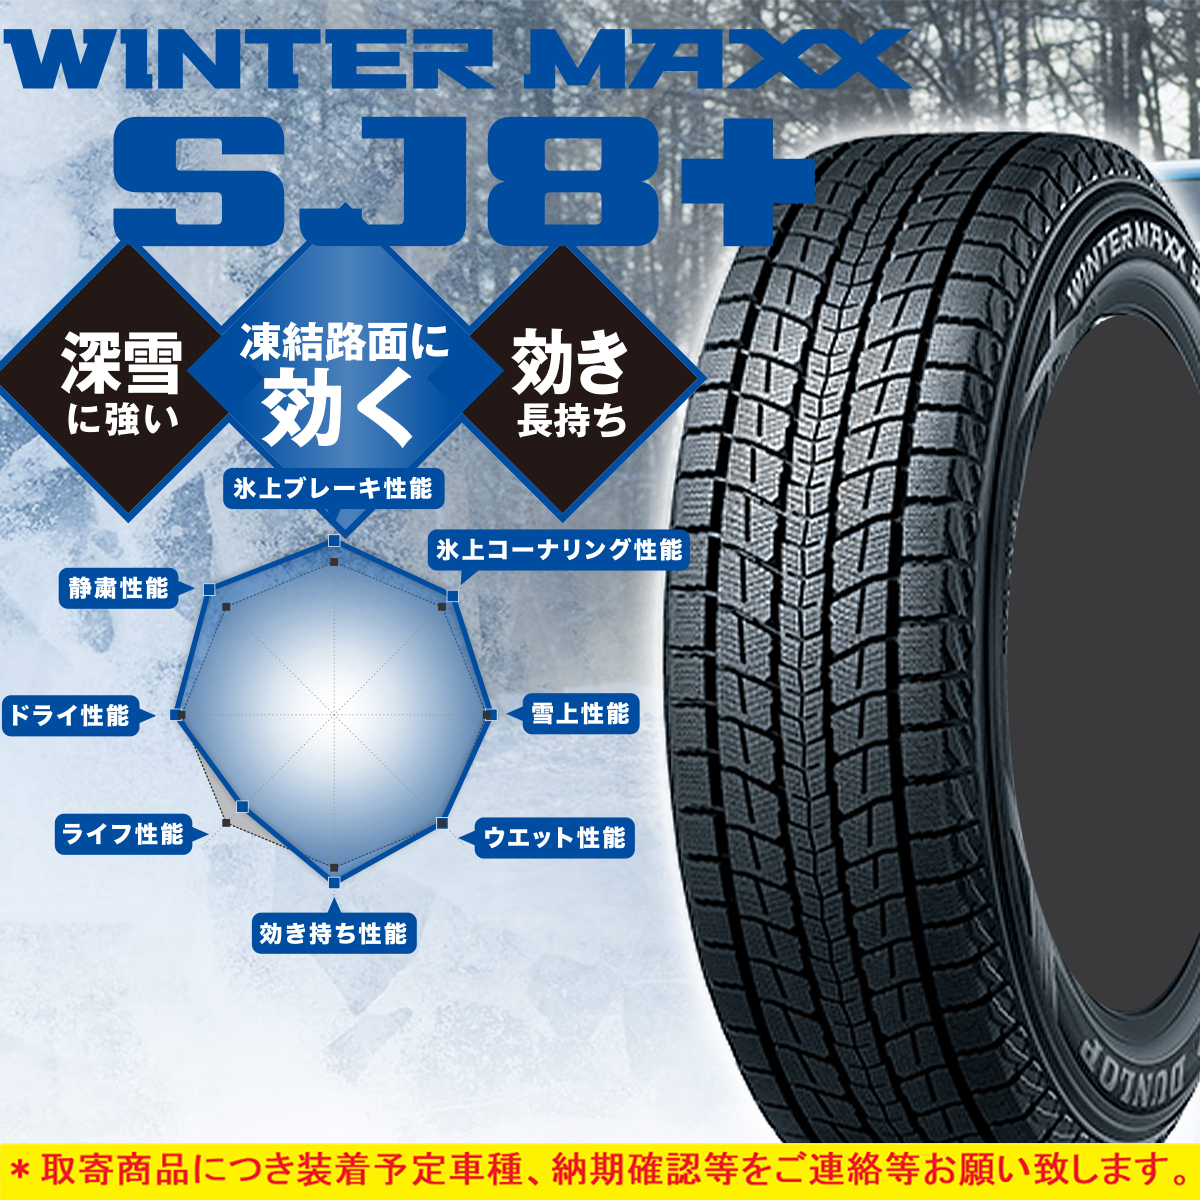 新品 SUV スタッドレス DUNLOP WINTER MAXX SJ8+ 235/65-18 235/65R18 106Q 1本 LEXUS RX ムラーノ AUDI Q7 JAGUAR I-PACE ダンロップ